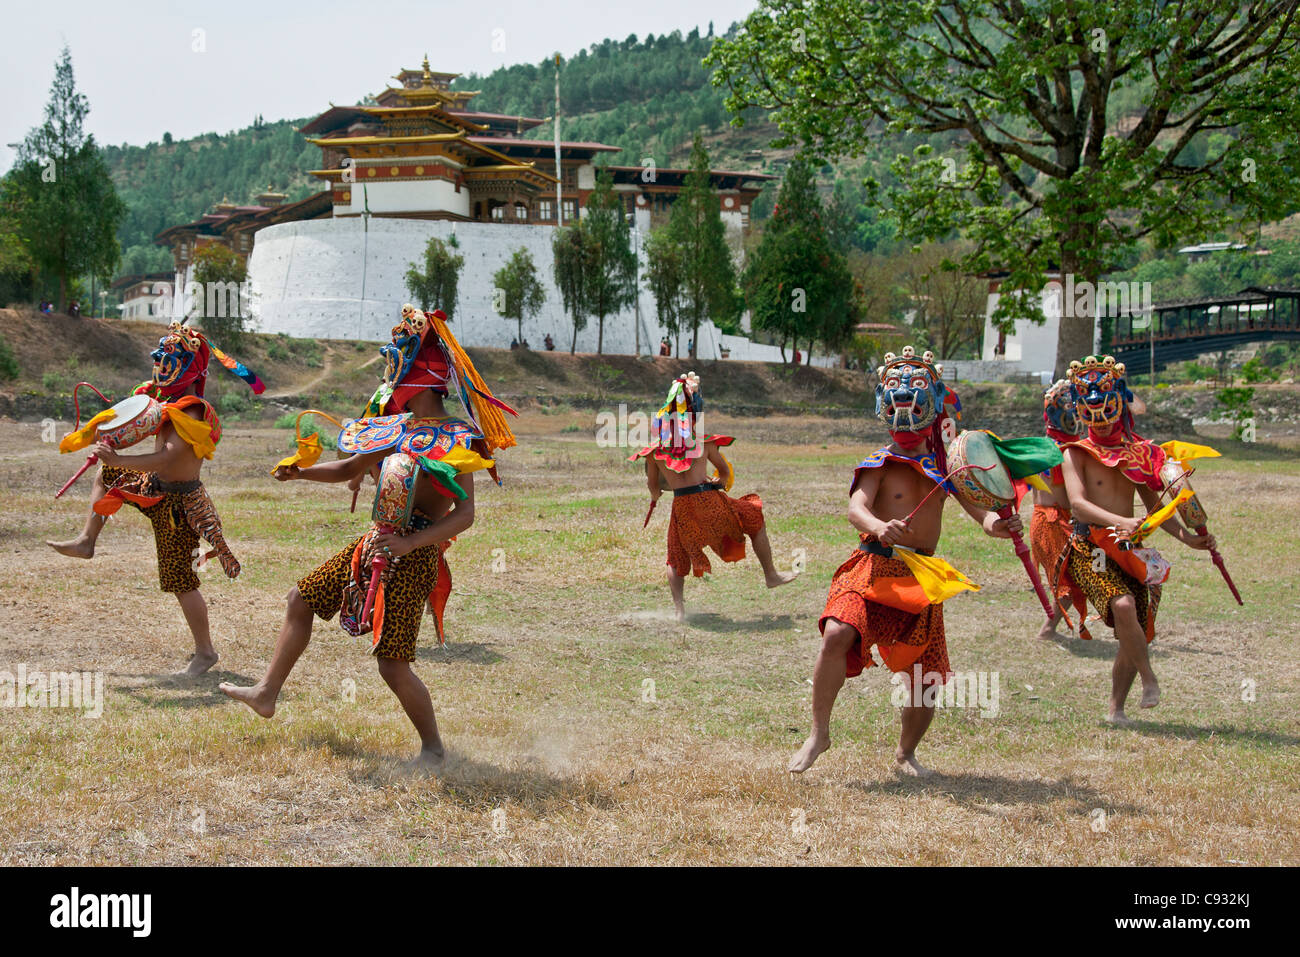 Les interprètes dansent Ging dang, Tsoling la danse de Ging et l'extérieur Tsholing Punakha Dzong. Banque D'Images